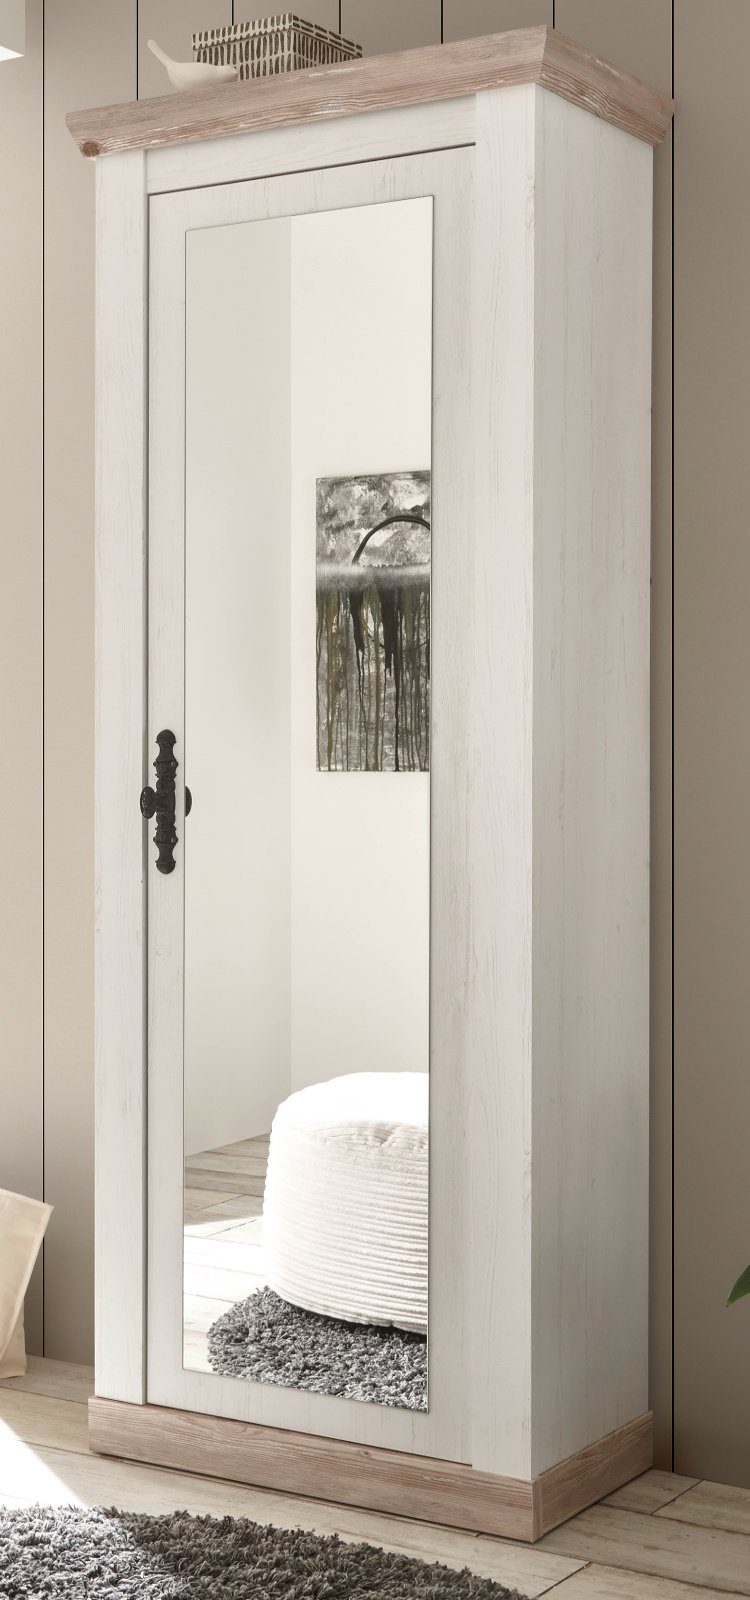 Furn.Design Garderobenschrank Rovola (Schuhschrank in Pinie weiß, 73 x 201 cm) mit großer Spiegeltür, variable Inneneinteilung